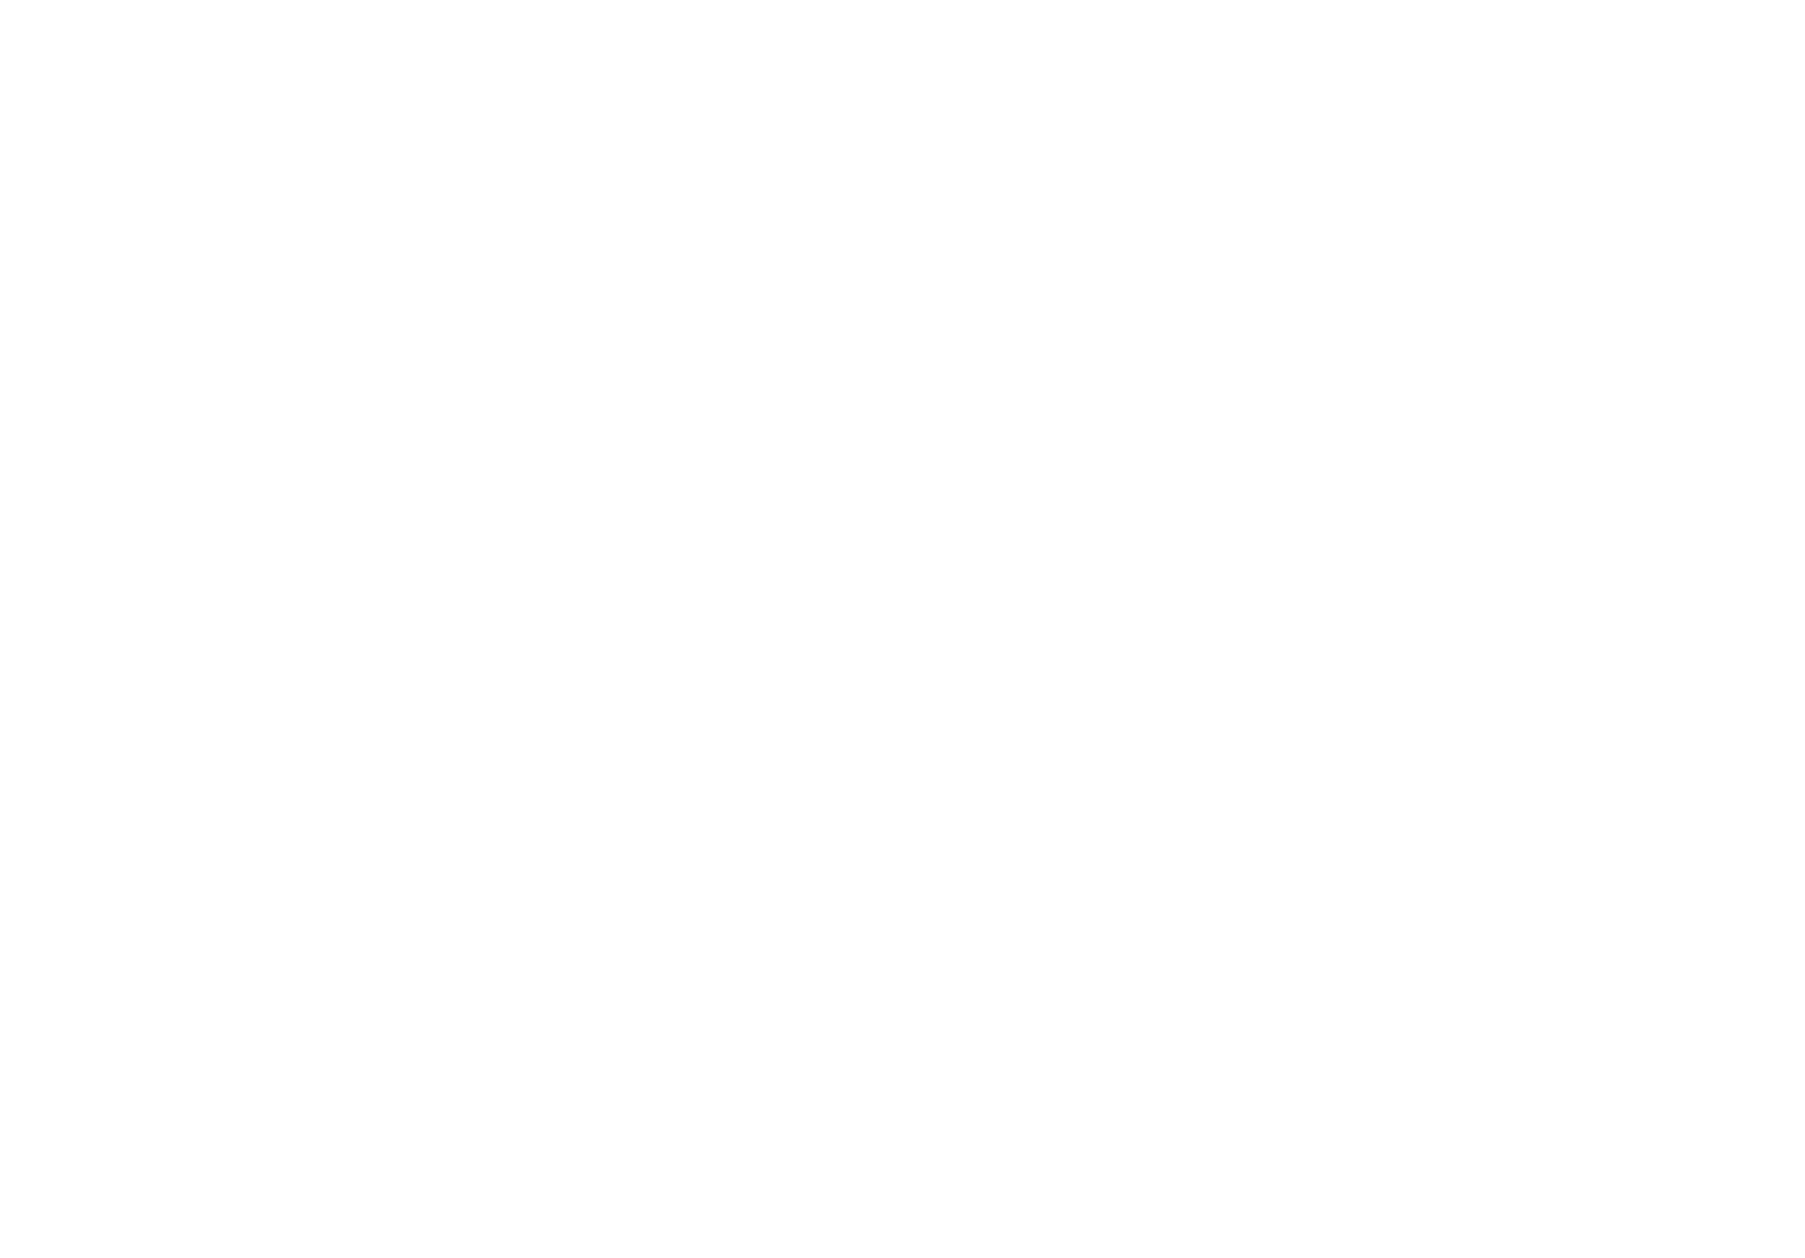 Ф. С. Пилипенко, Н. А. Аврорин, С. Я. Соколов и Н. П. Лященко на праздновании 150-летия Никитского ботанического сада. Крым, 1962 г. 